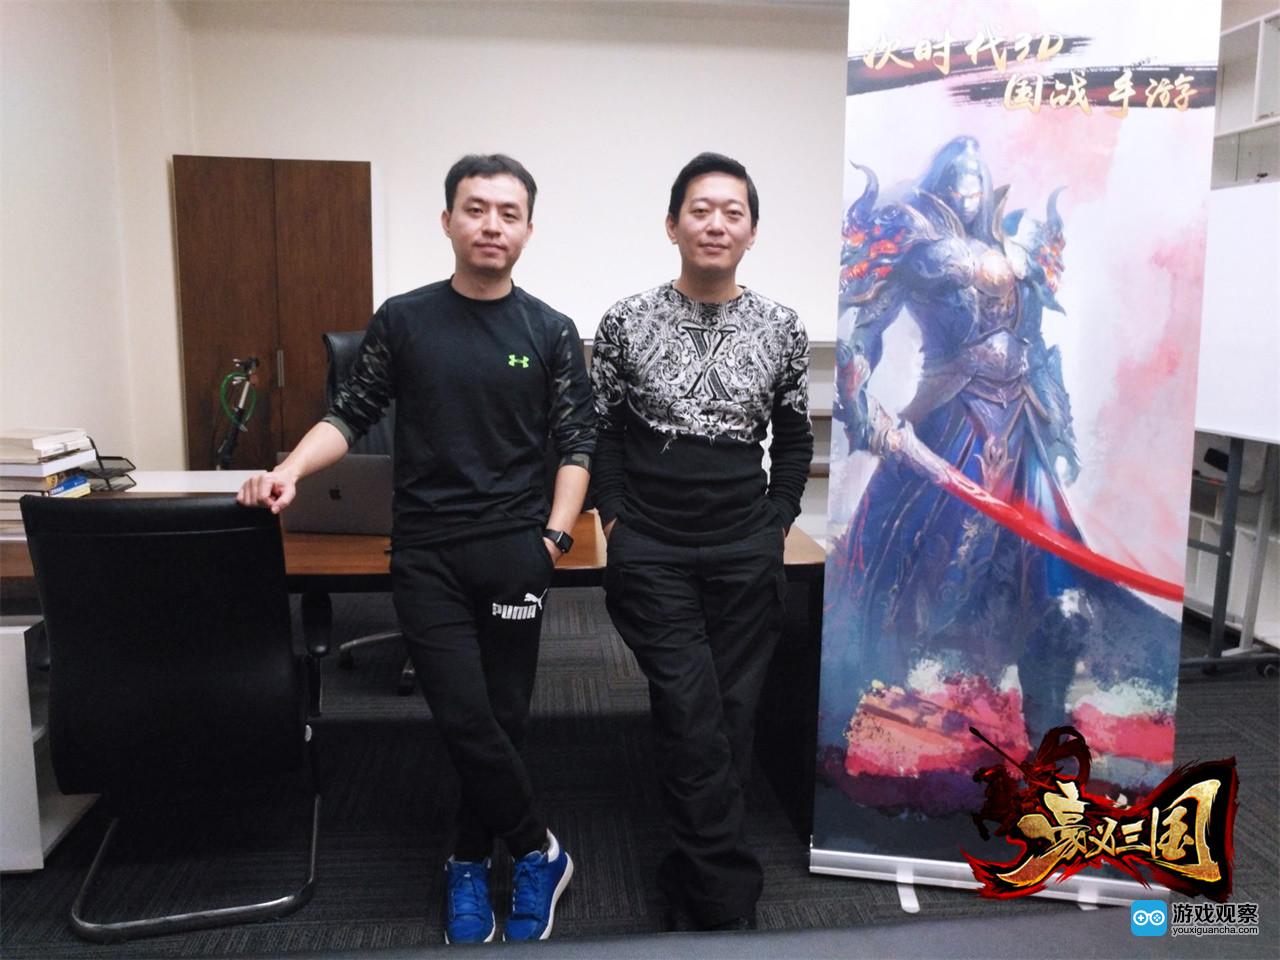 乐享欣动联合创始人陈洲鹏(左)和翼遥游戏CEO薛亮